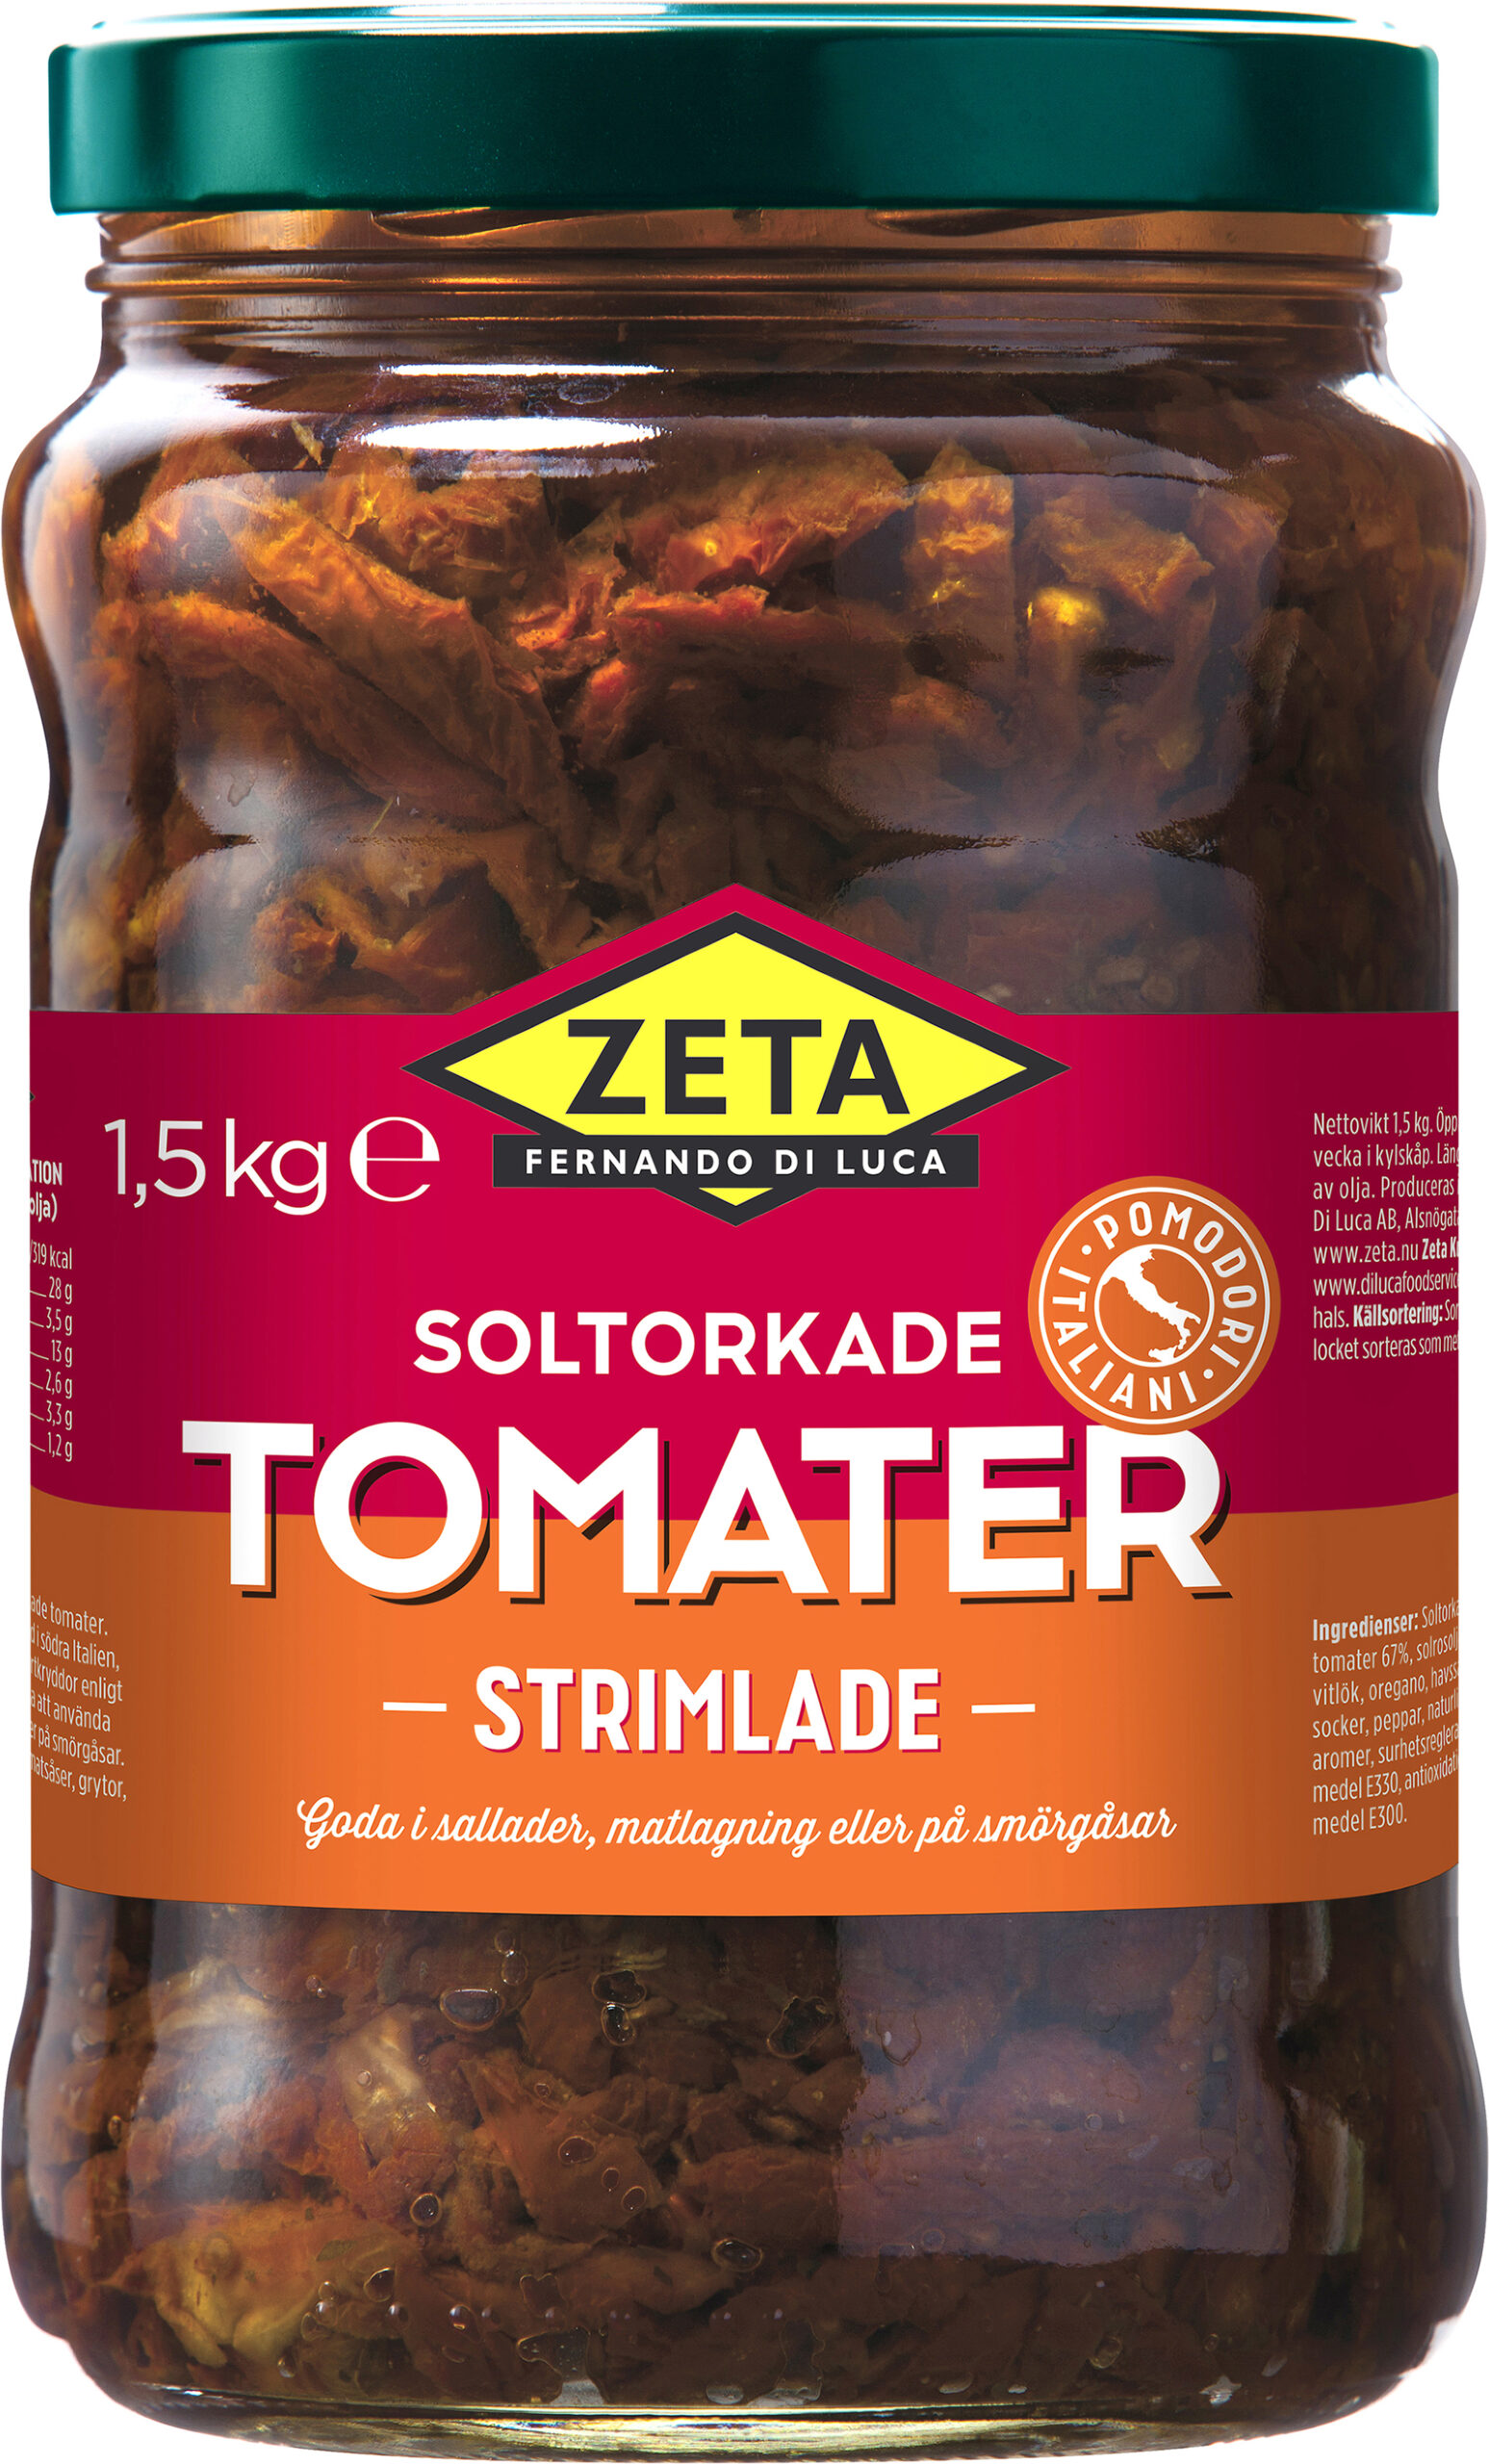 5298 Soltorkade Tomater Strimlade 1,5kg